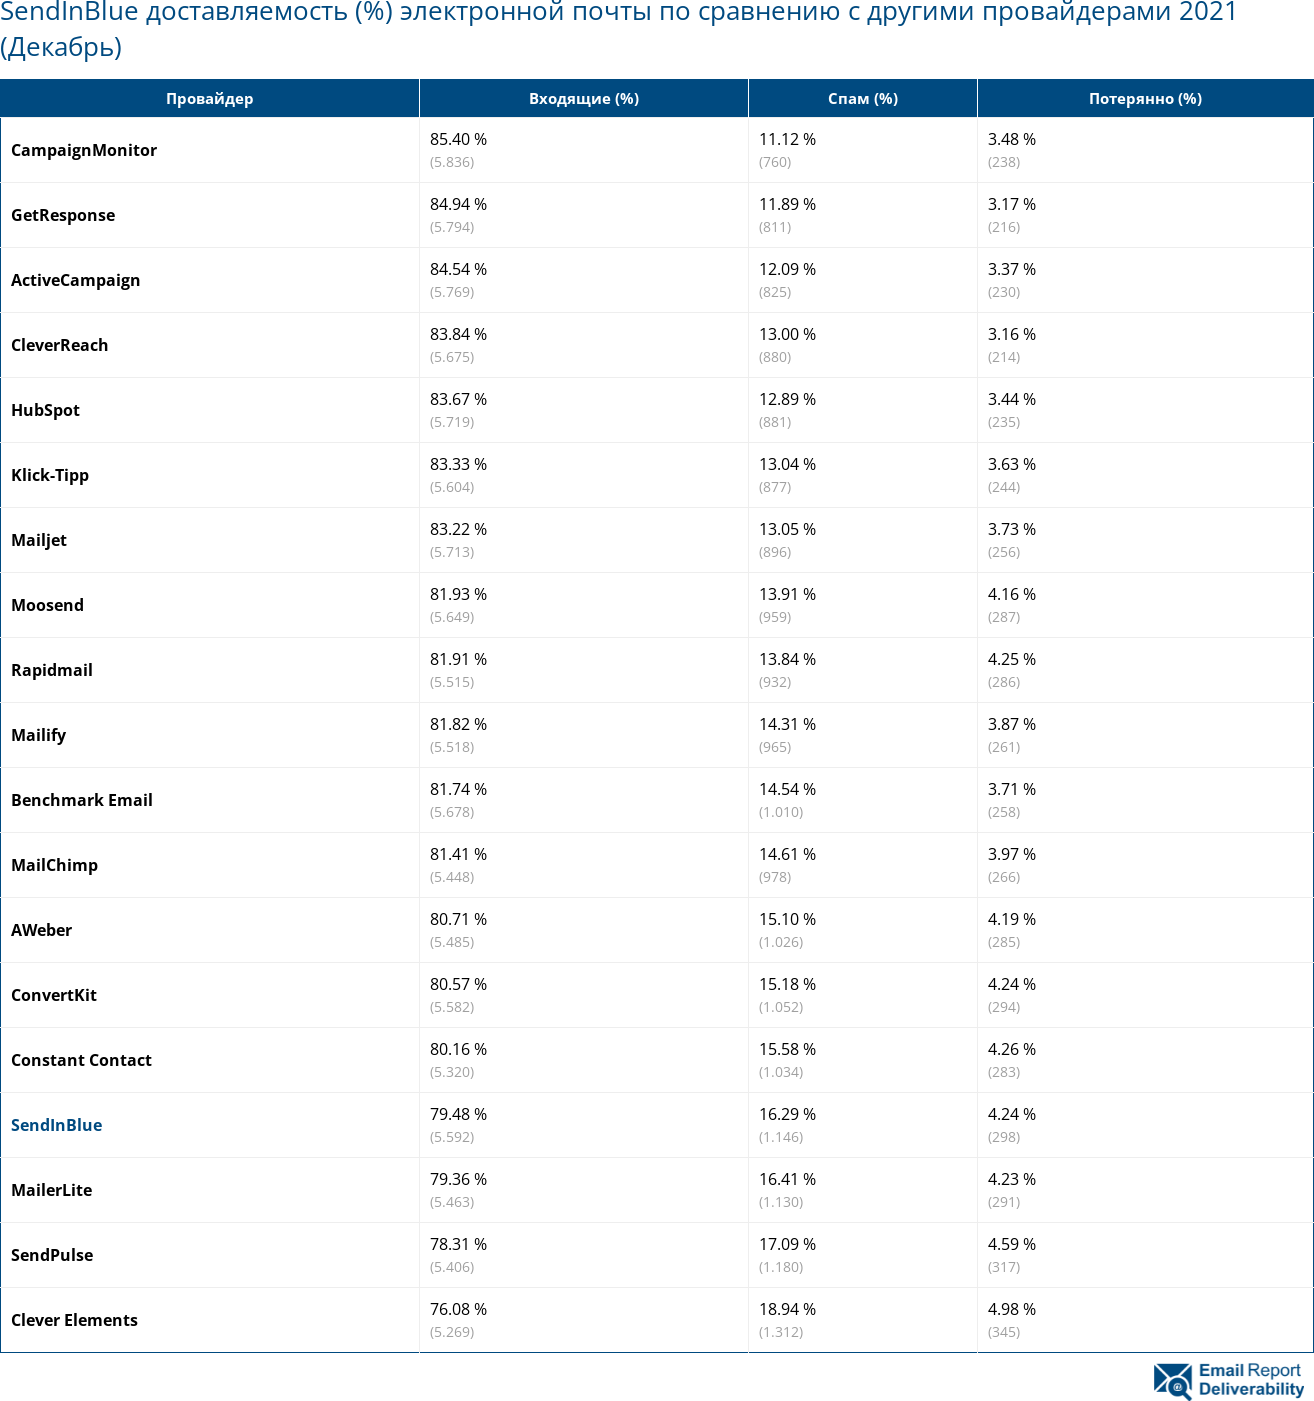 SendInBlue доставляемость (%) электронной почты по сравнению с другими провайдерами 2021 (Декабрь)